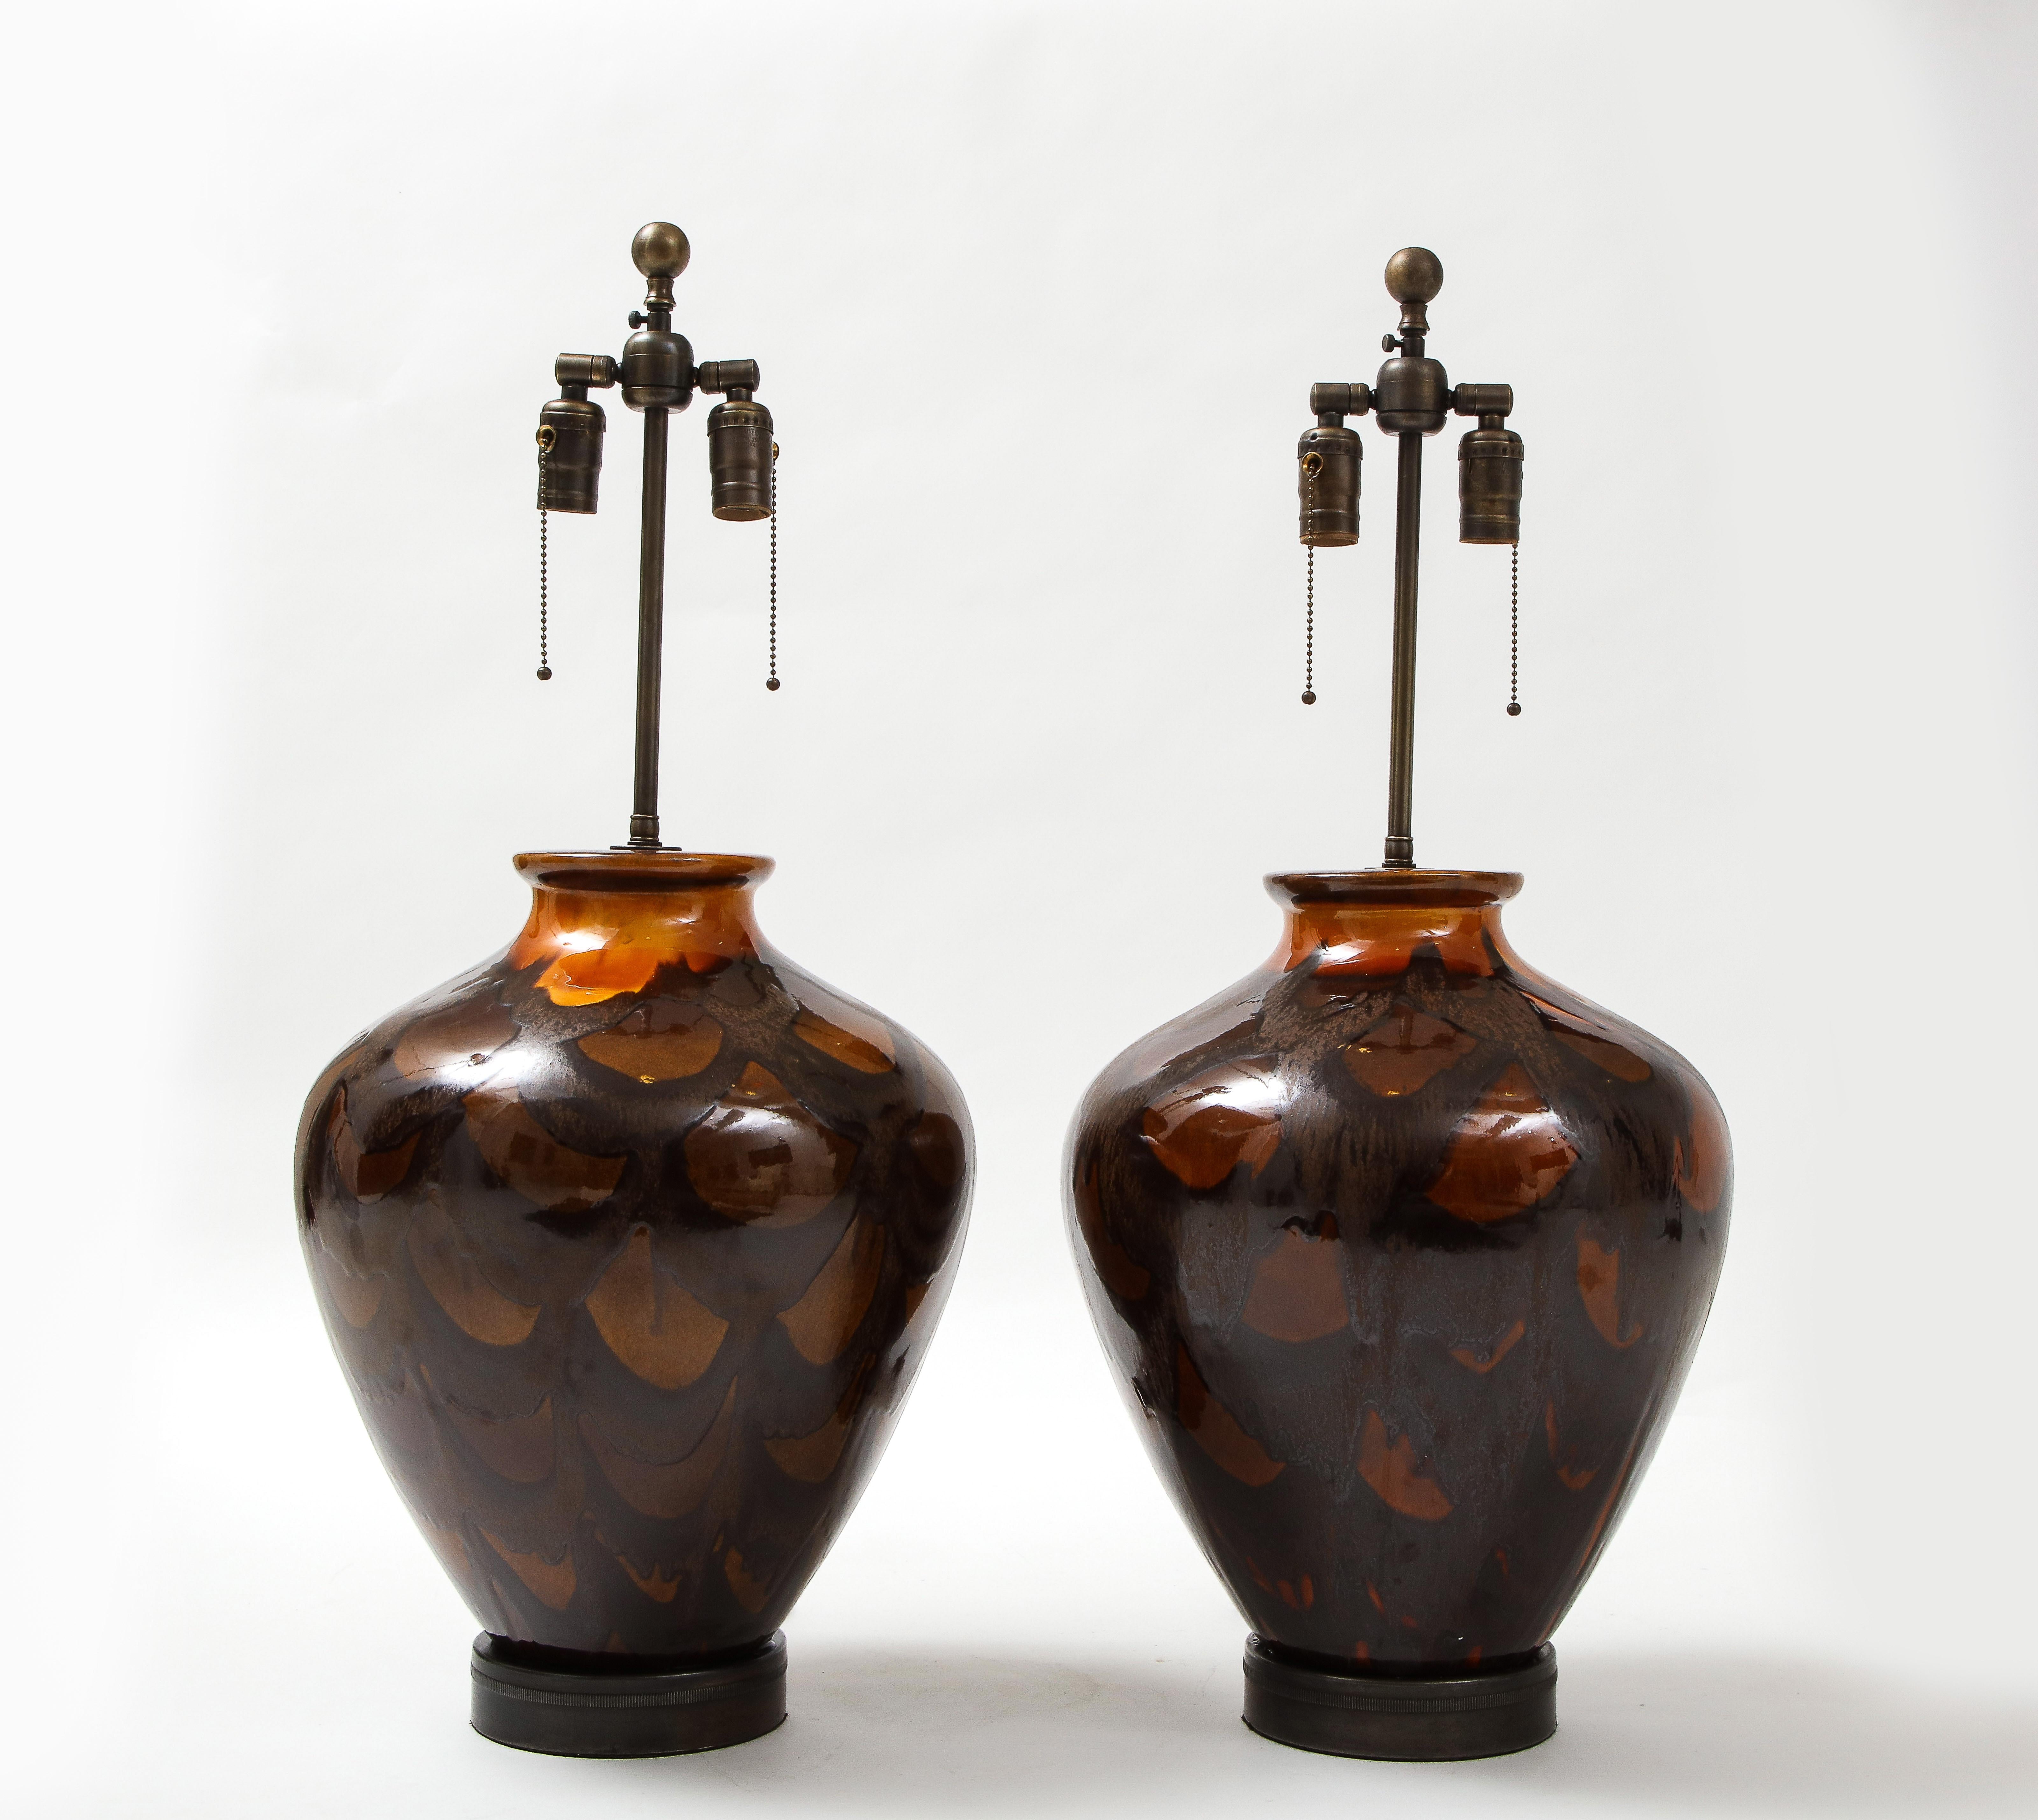 Paire de lampes en poterie italienne moderniste de grande taille avec une écaille de tortue stylisée, glaçure orange brûlée. Les lampes sont montées sur des socles en bronze vieilli et sont dotées de douilles à chaîne double. chaque douille a une